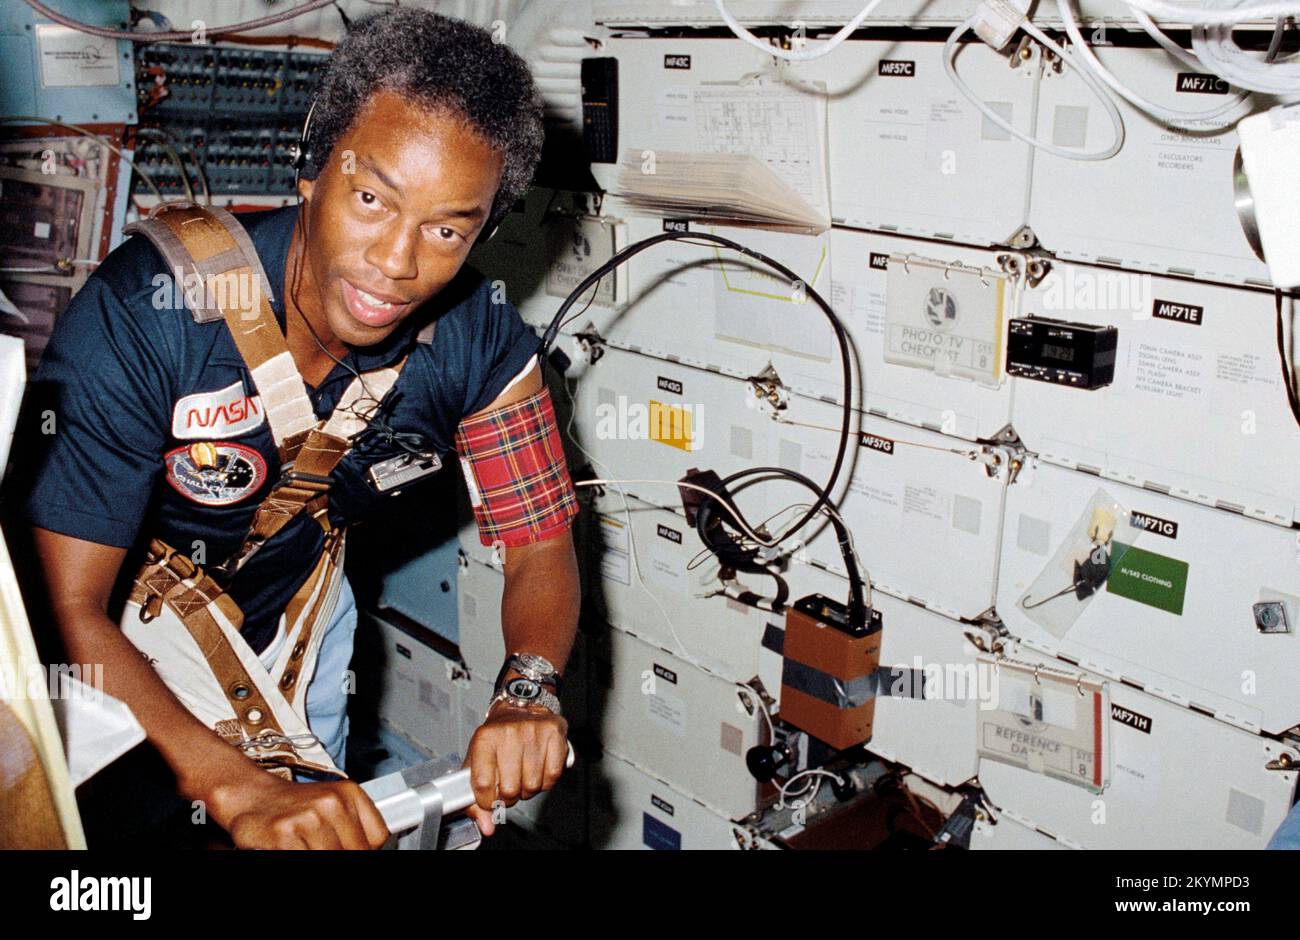 Guion Bluford (5. September 1983) Astronaut Guion S. Bluford, Missionsspezialist für STS-8, unterstützt Dr. William E. Thornton (außerhalb des Rahmens) bei einem medizinischen Test, bei dem das Laufband-Übungsgerät verwendet werden muss, das vom Arzt STS-8 für Raumfahrt entwickelt wurde. Bluford war der erste afroamerikanische Astronaut, der am 30. August 1983 mit dem Space Shuttle Challenger in den Orbit flog. Stockfoto